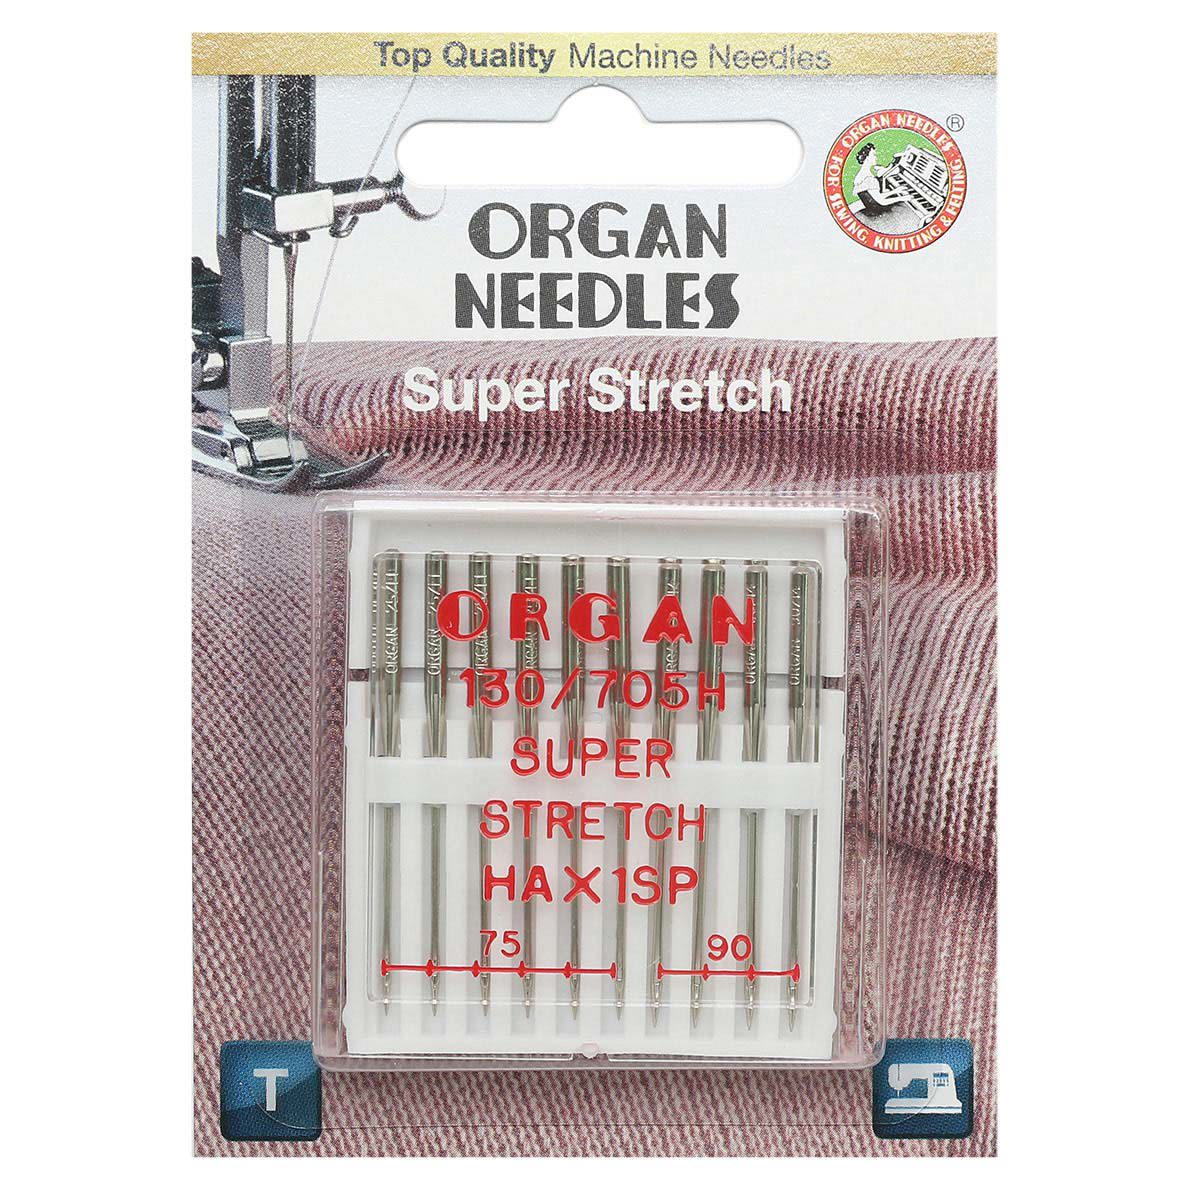 Супер стрейч. Иглы для швейных машин Organ супер стрейч. Иглы орган супер стрейч 75. Игла/иглы Organ super stretch 75. Игла супер стрейч для швейной машинки 75-90.